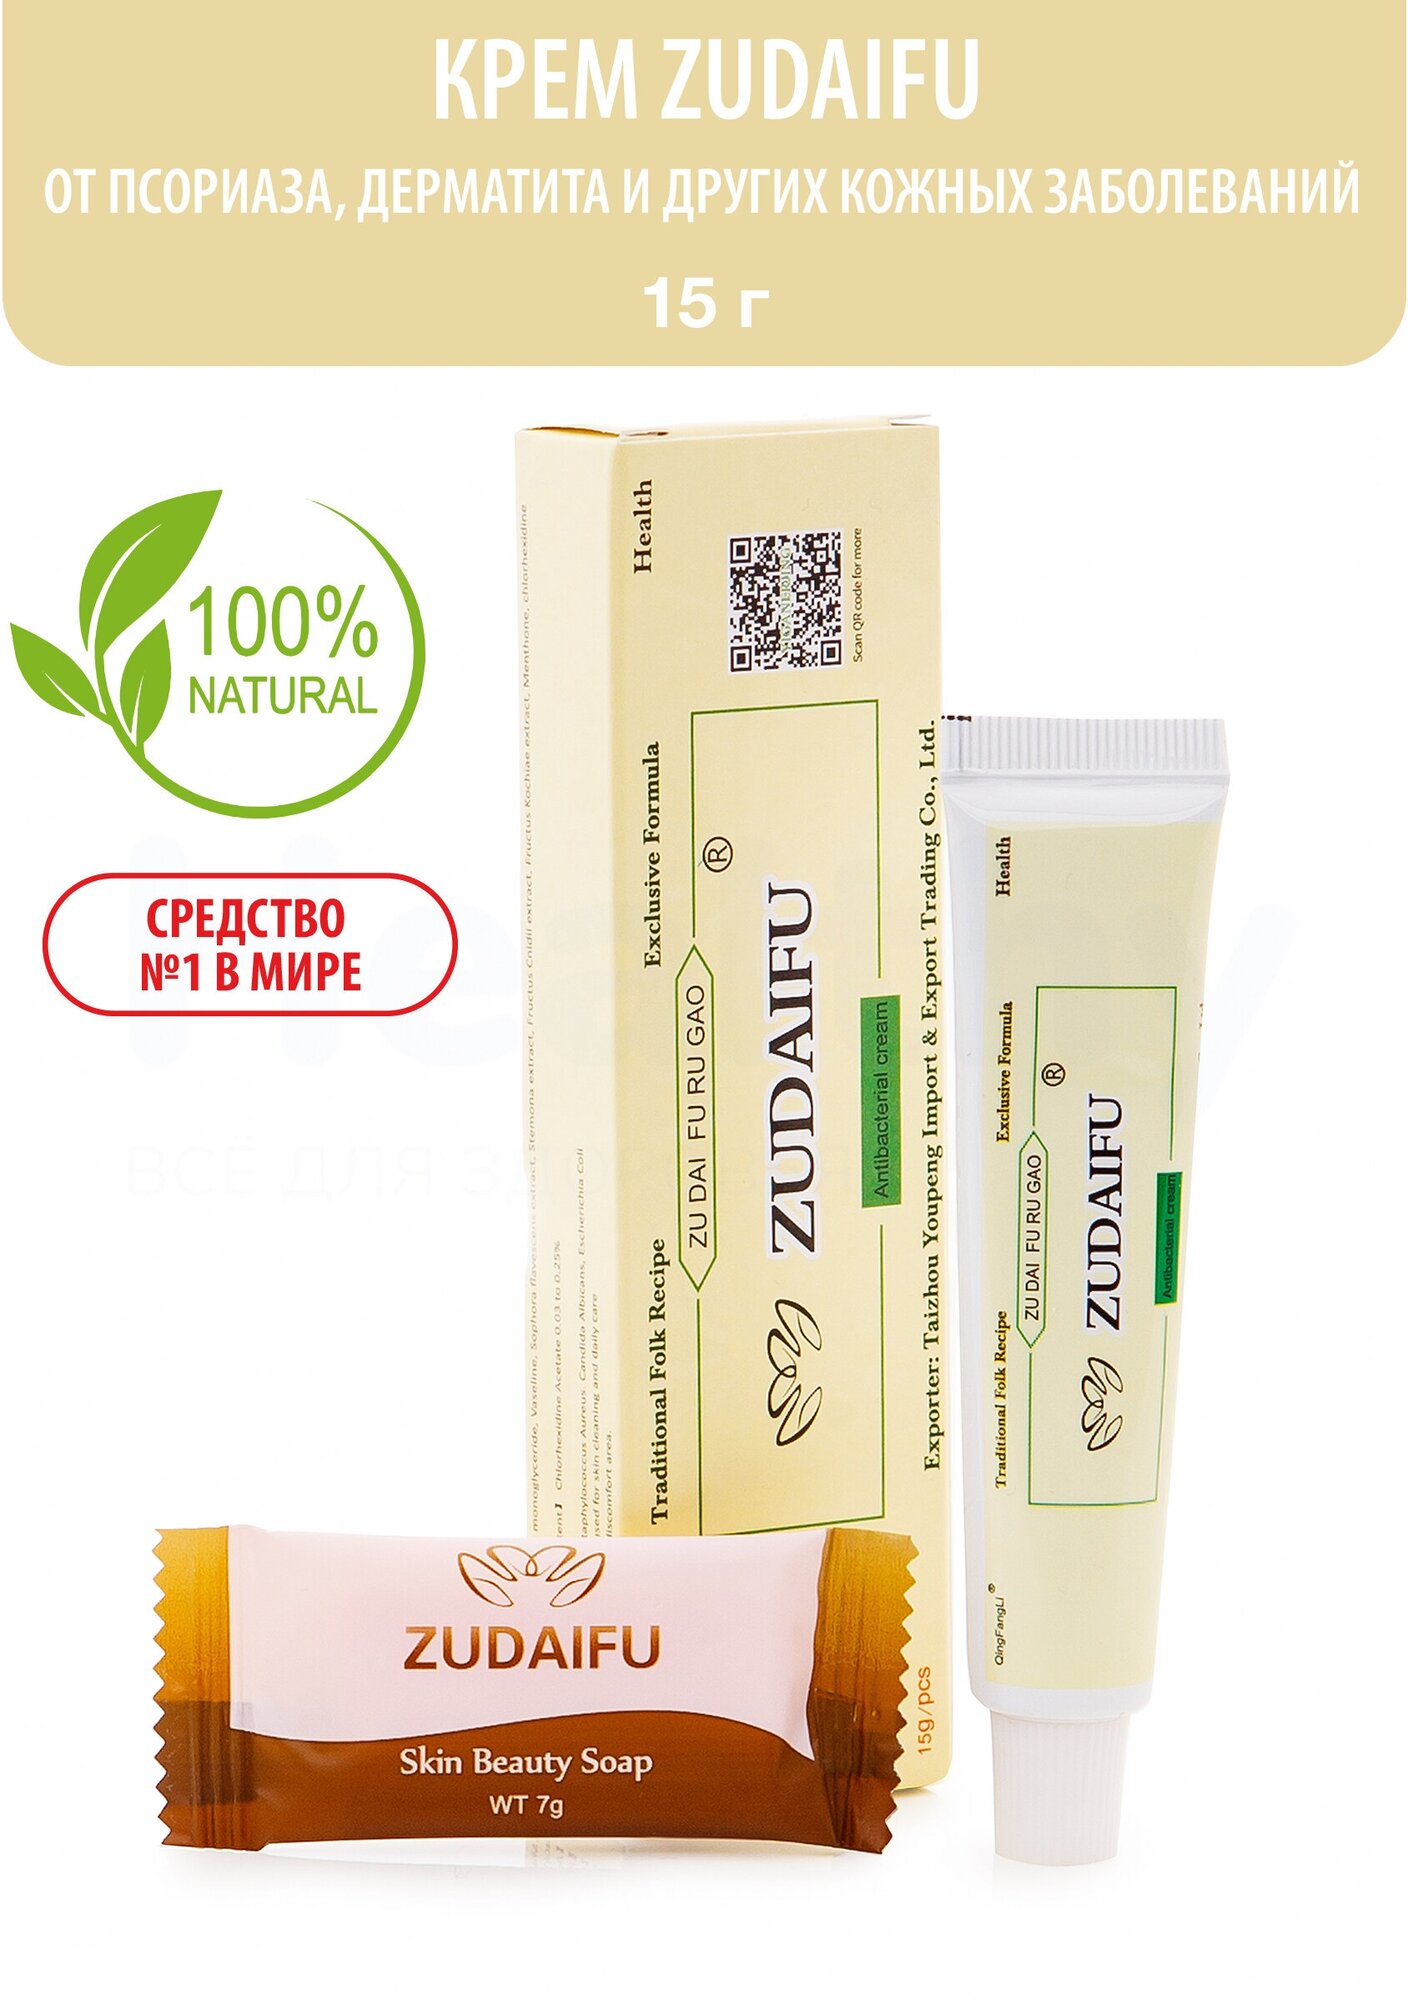 Мазь ZUDAIFU (Зудайфу) от псориаза, дерматита, лишая, экземе, прыщей, акне 15г.